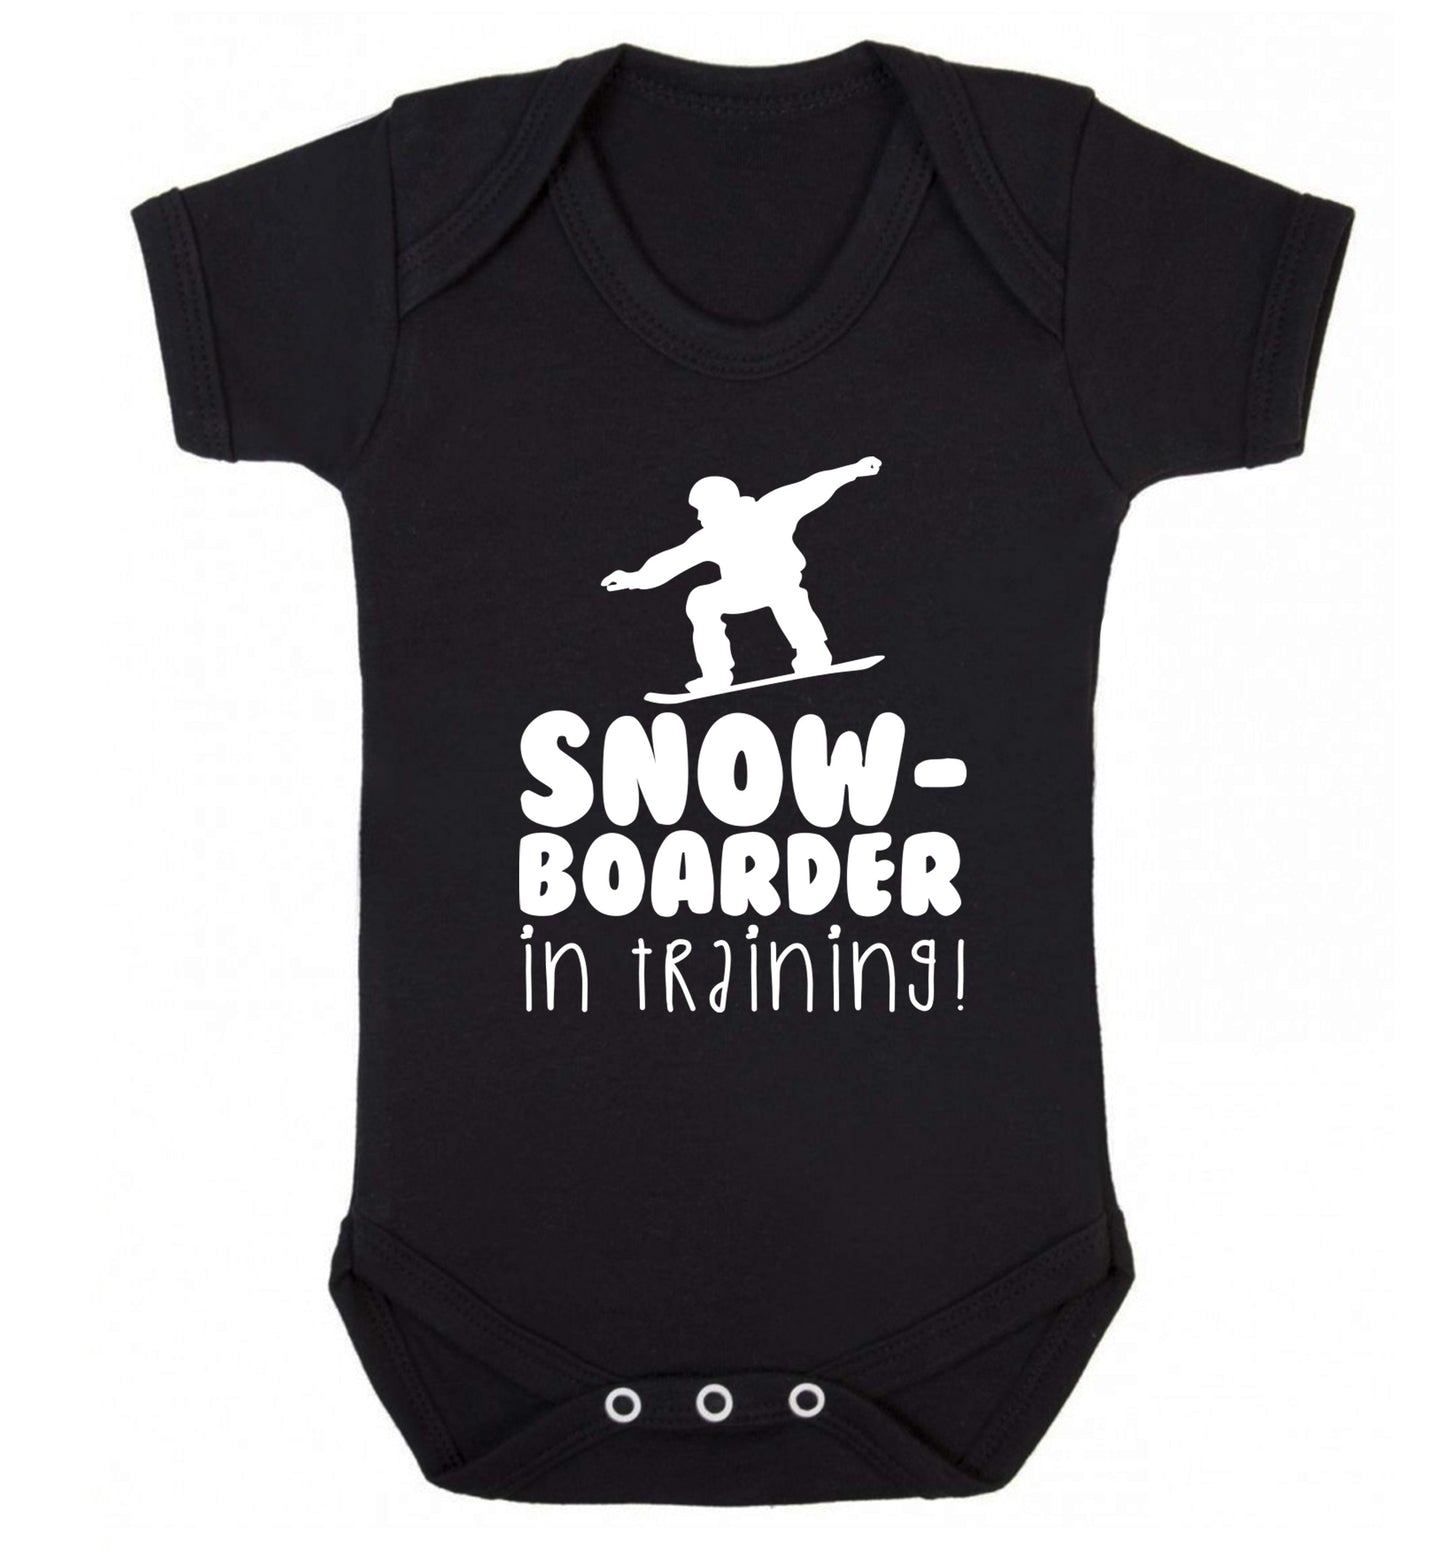 Snowboarder in training Baby Vest black 18-24 months